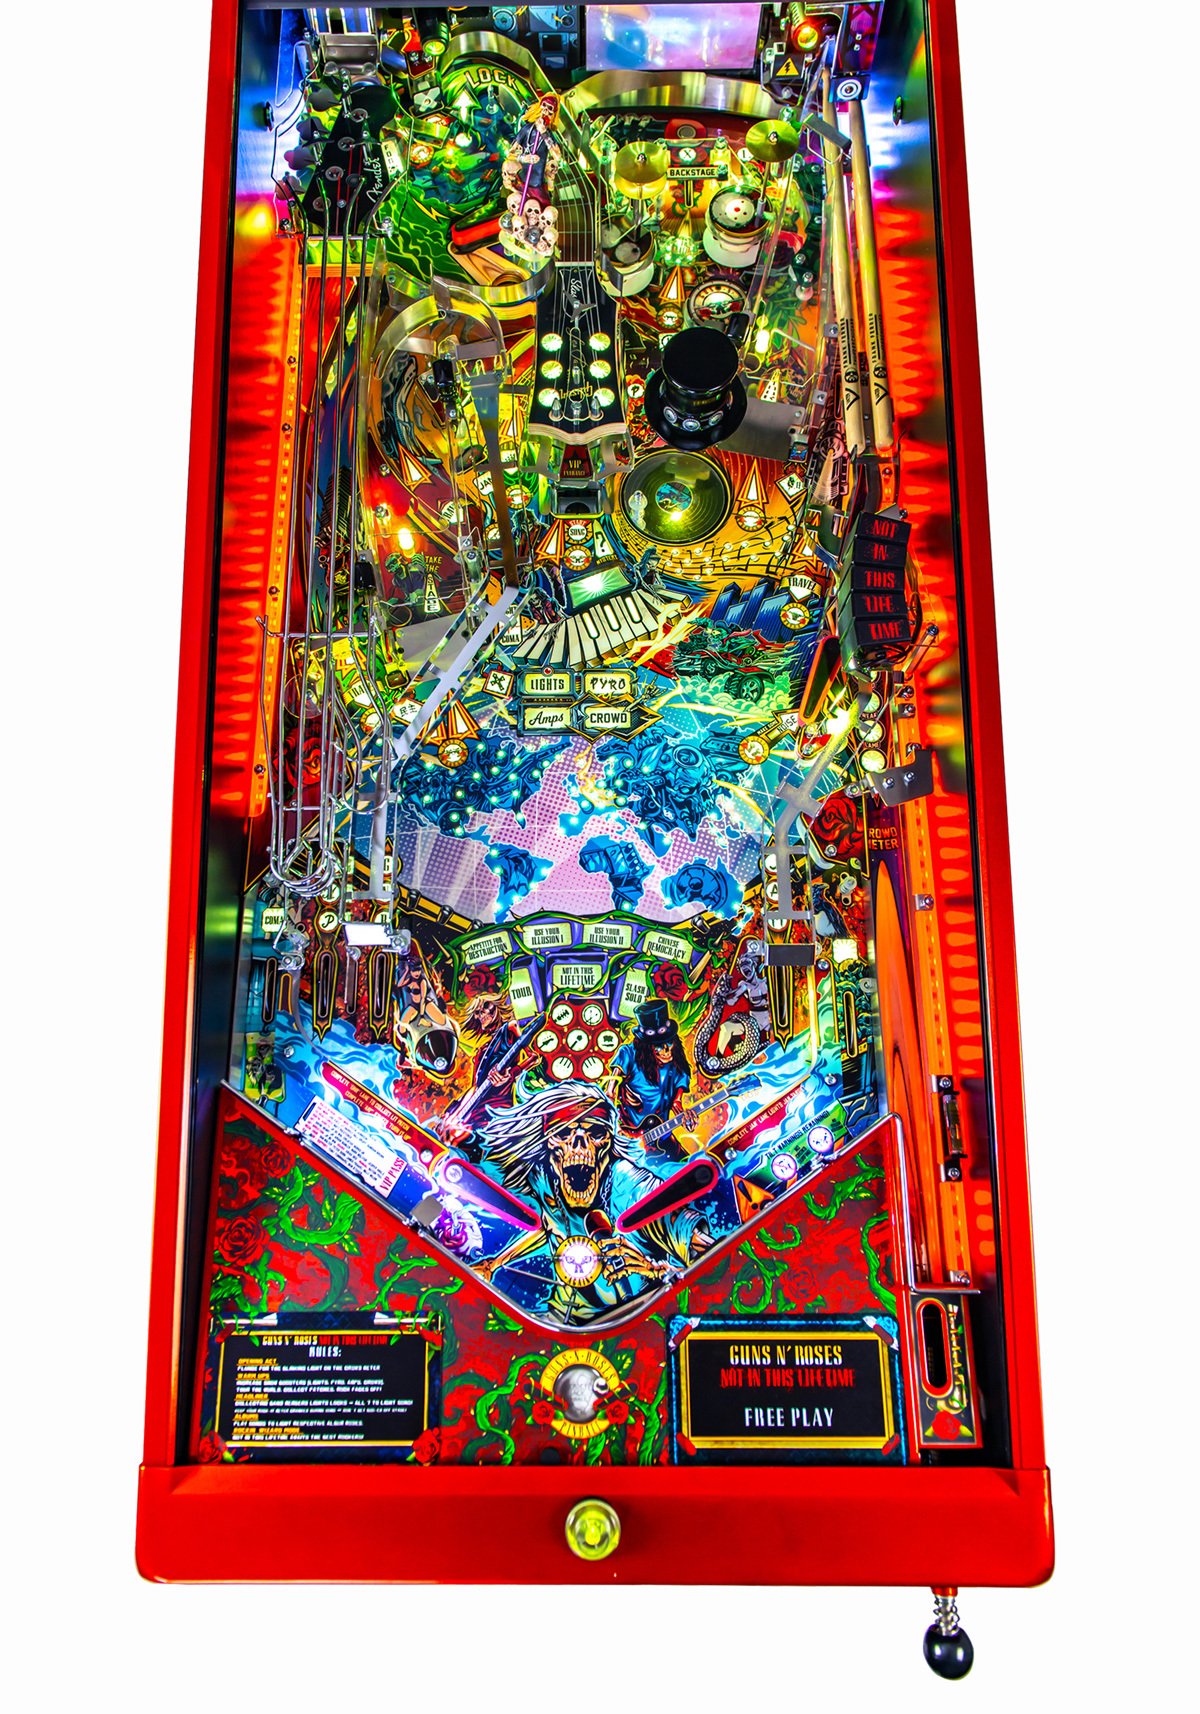 Guns N'Roses lança máquina de pinball projetada por Slash - A Rádio Rock -  89,1 FM - SP